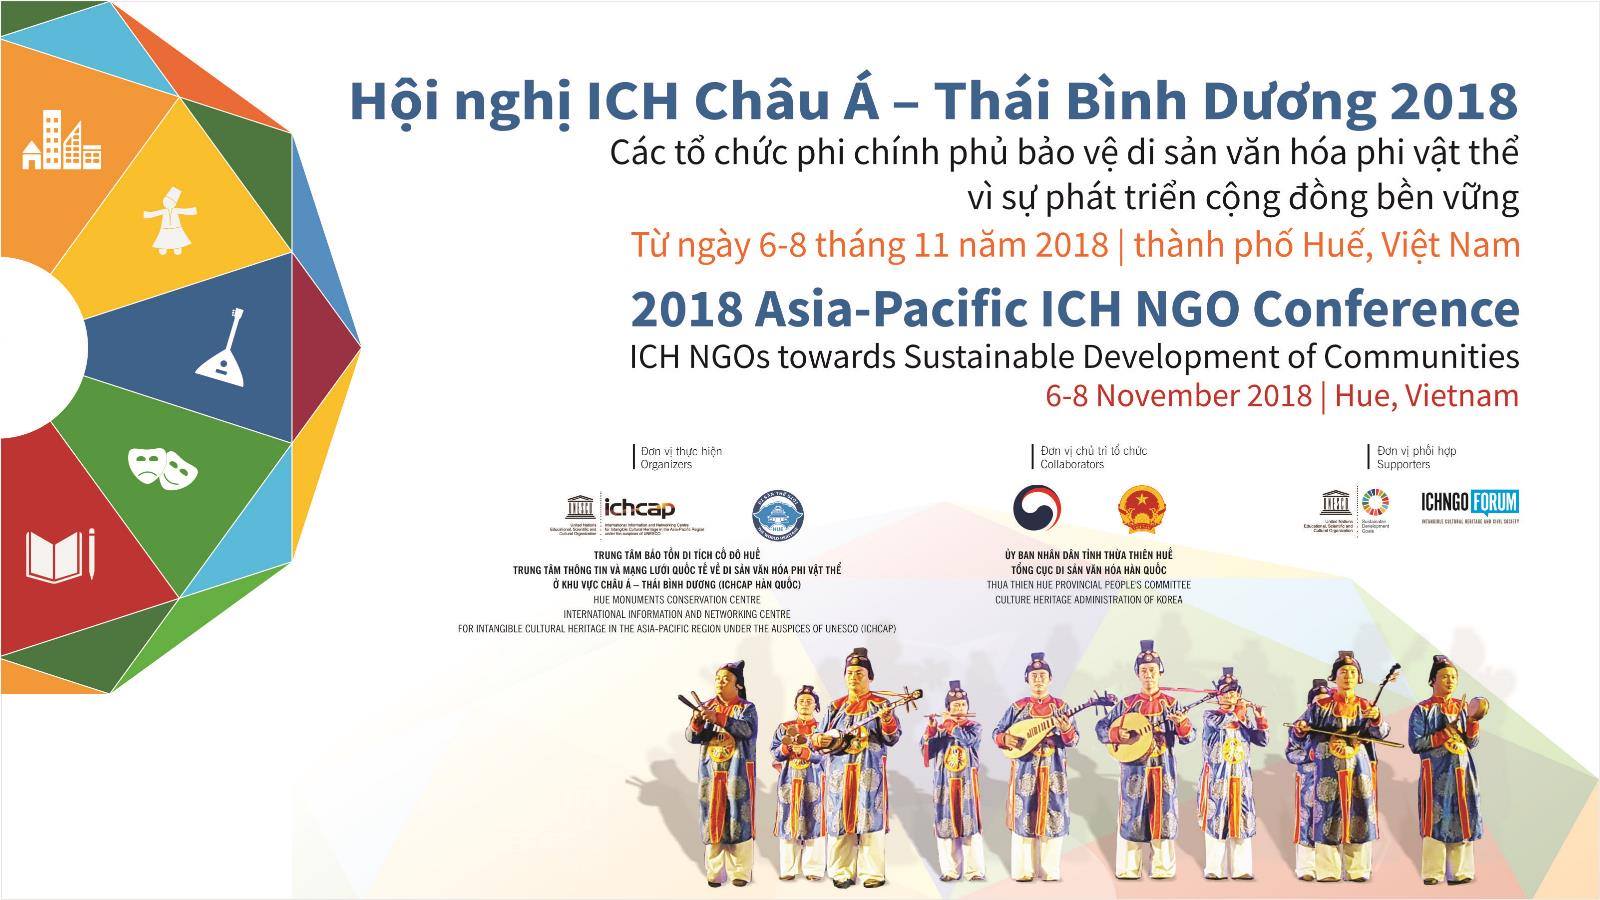 Hội nghị di sản văn hóa phi vật thể tại Châu Á - Thái Bình Dương 2018